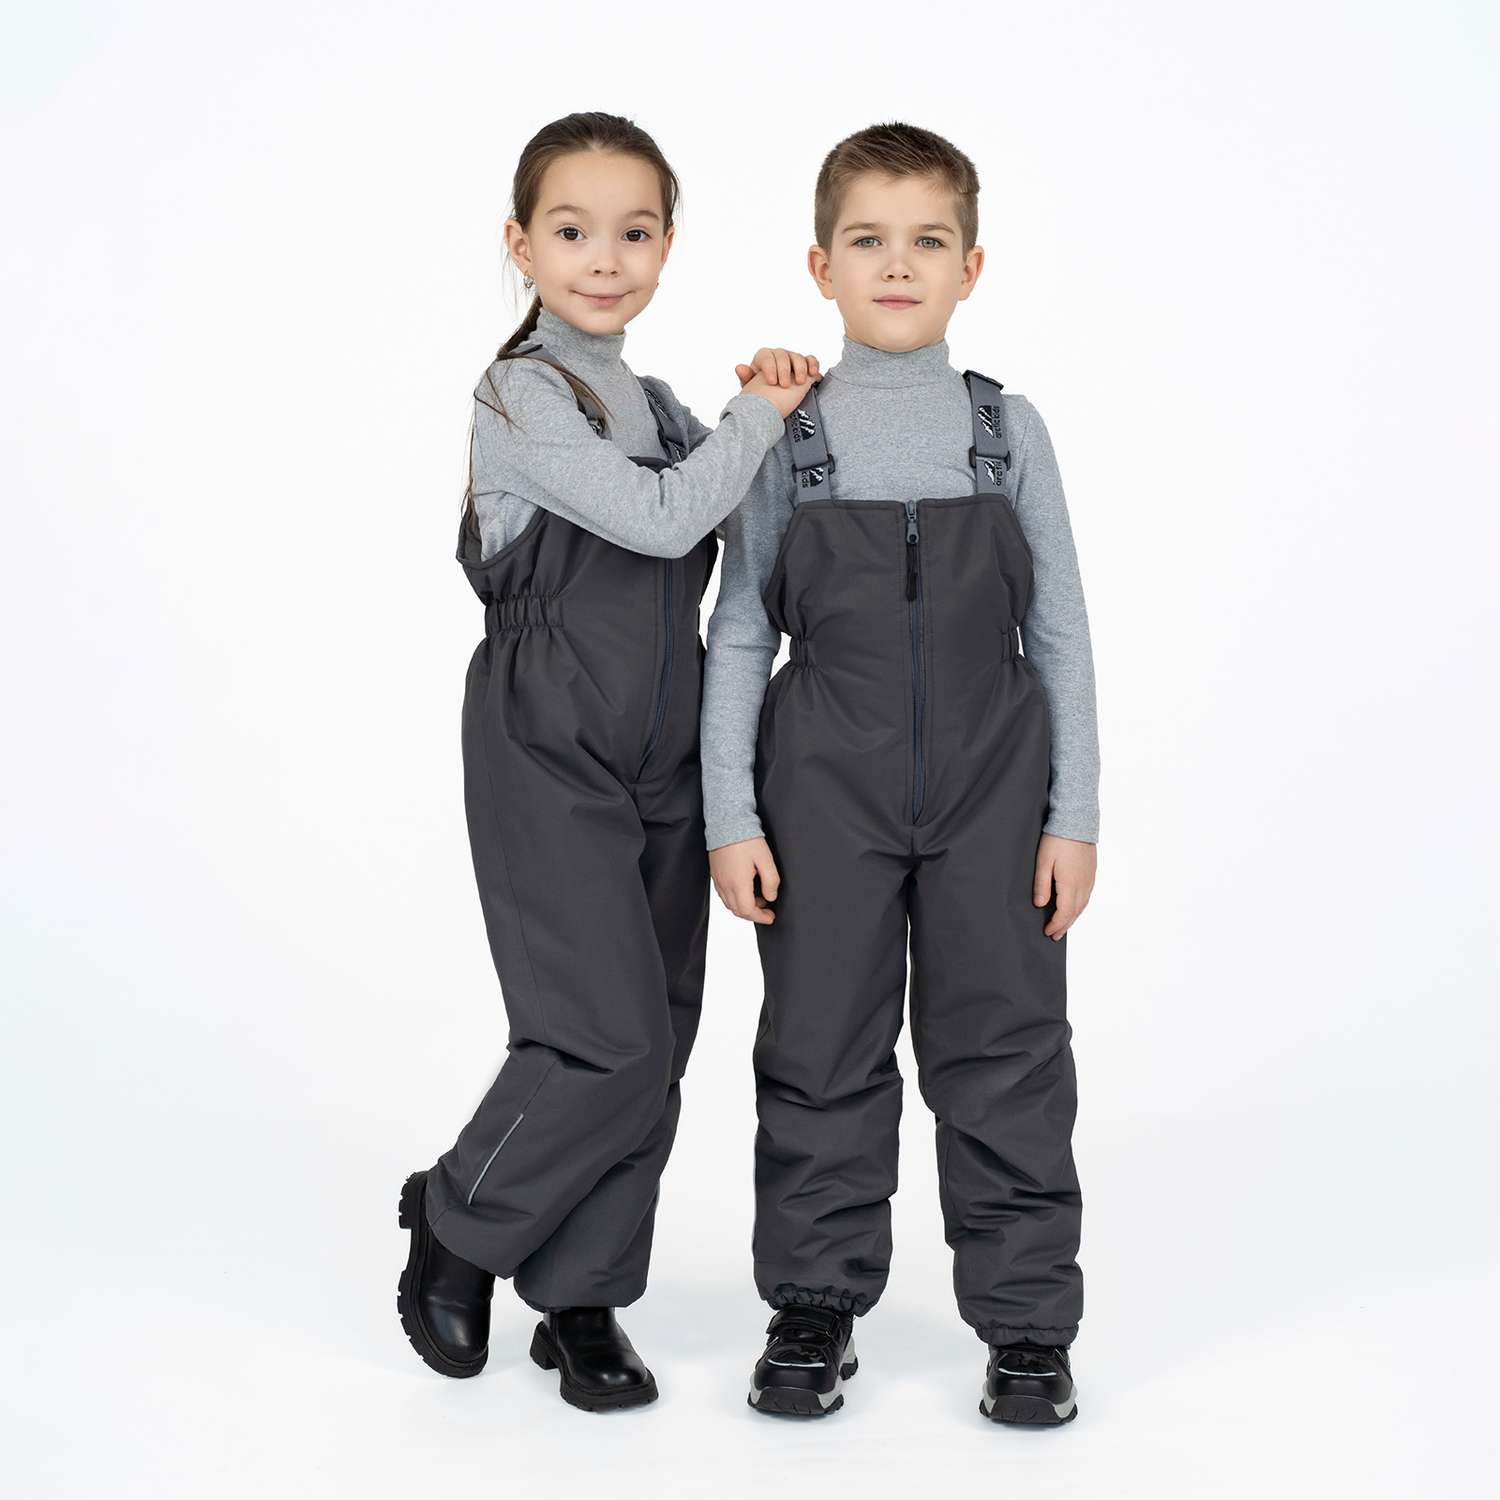 Полукомбинезон Arctic kids 60-008 серый - фото 2